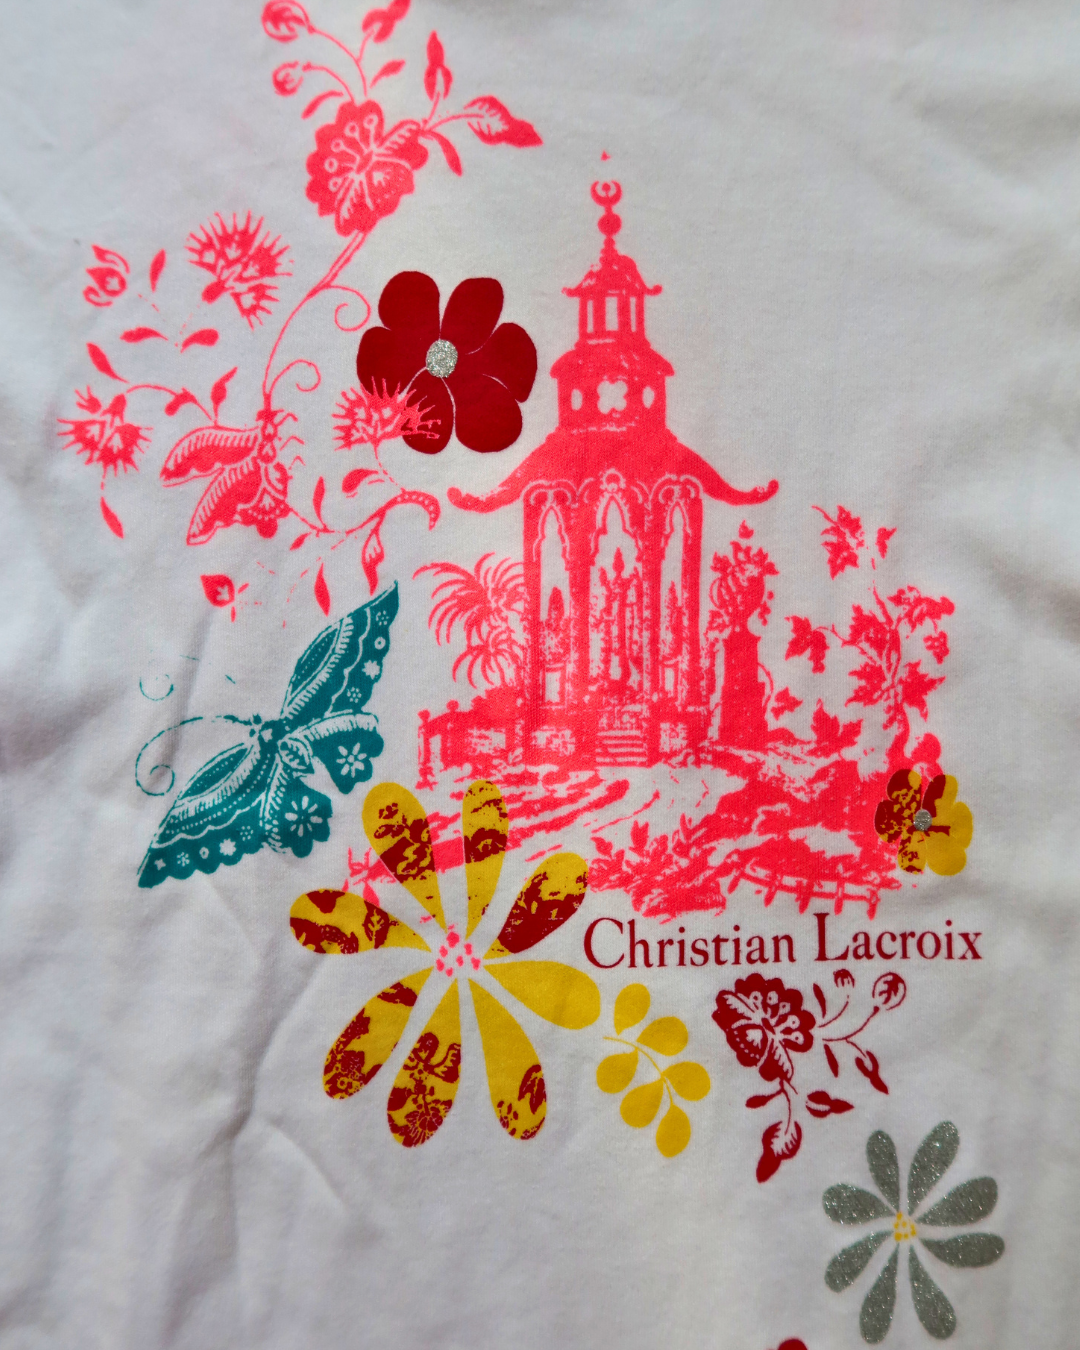 T-shirt Christian Lacroix ¬ T.S